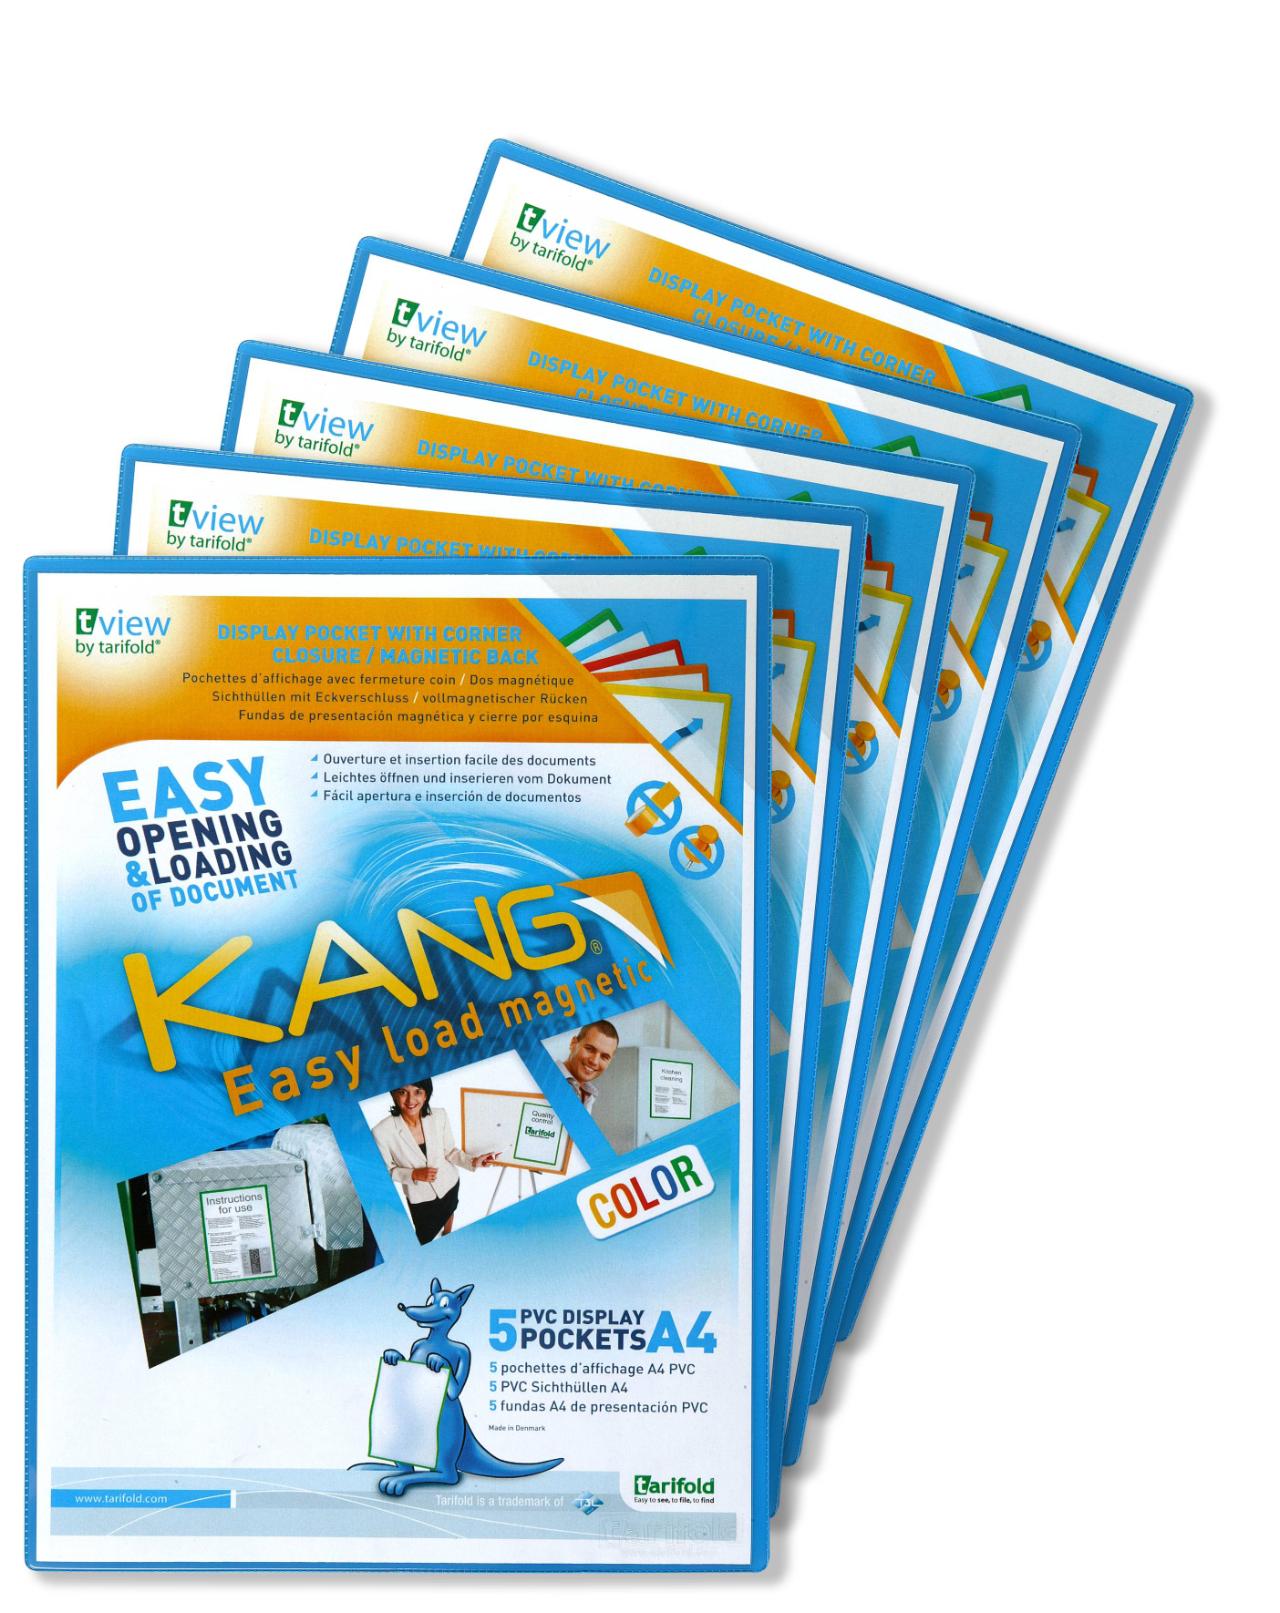 Kang Easy Load Magnetic Signage Pocket, A4